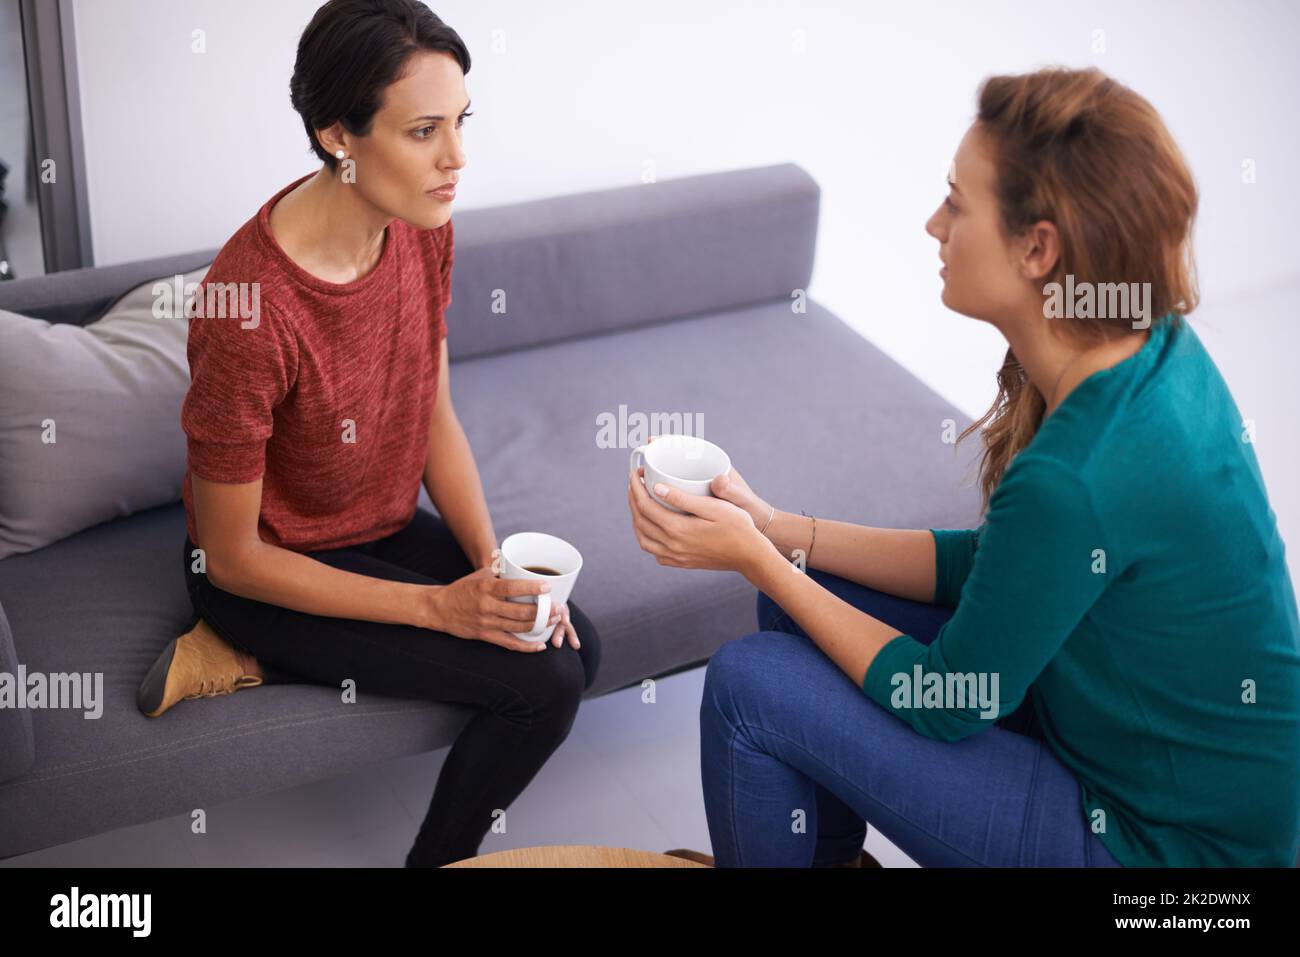 Breve discussione sul caffè. Scatto di due professionisti femminili che hanno una discussione in un ambiente informale dell'ufficio. Foto Stock